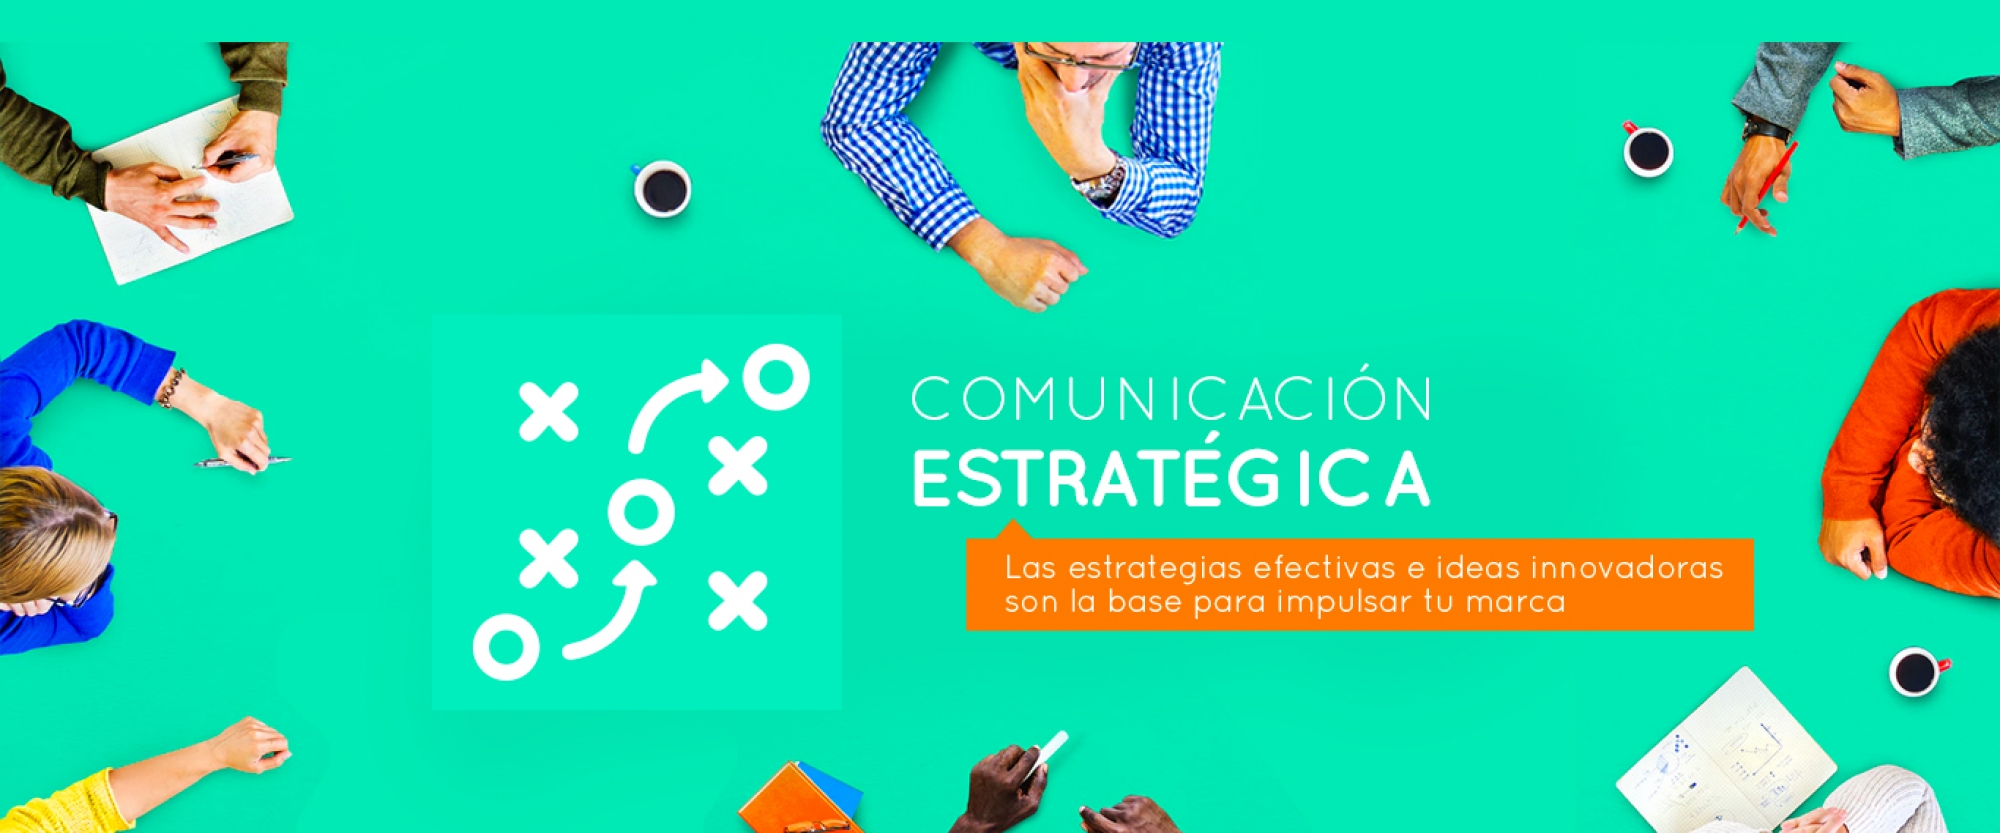 Comunicación Estratégica - Servicios Grupo creativo Macondo